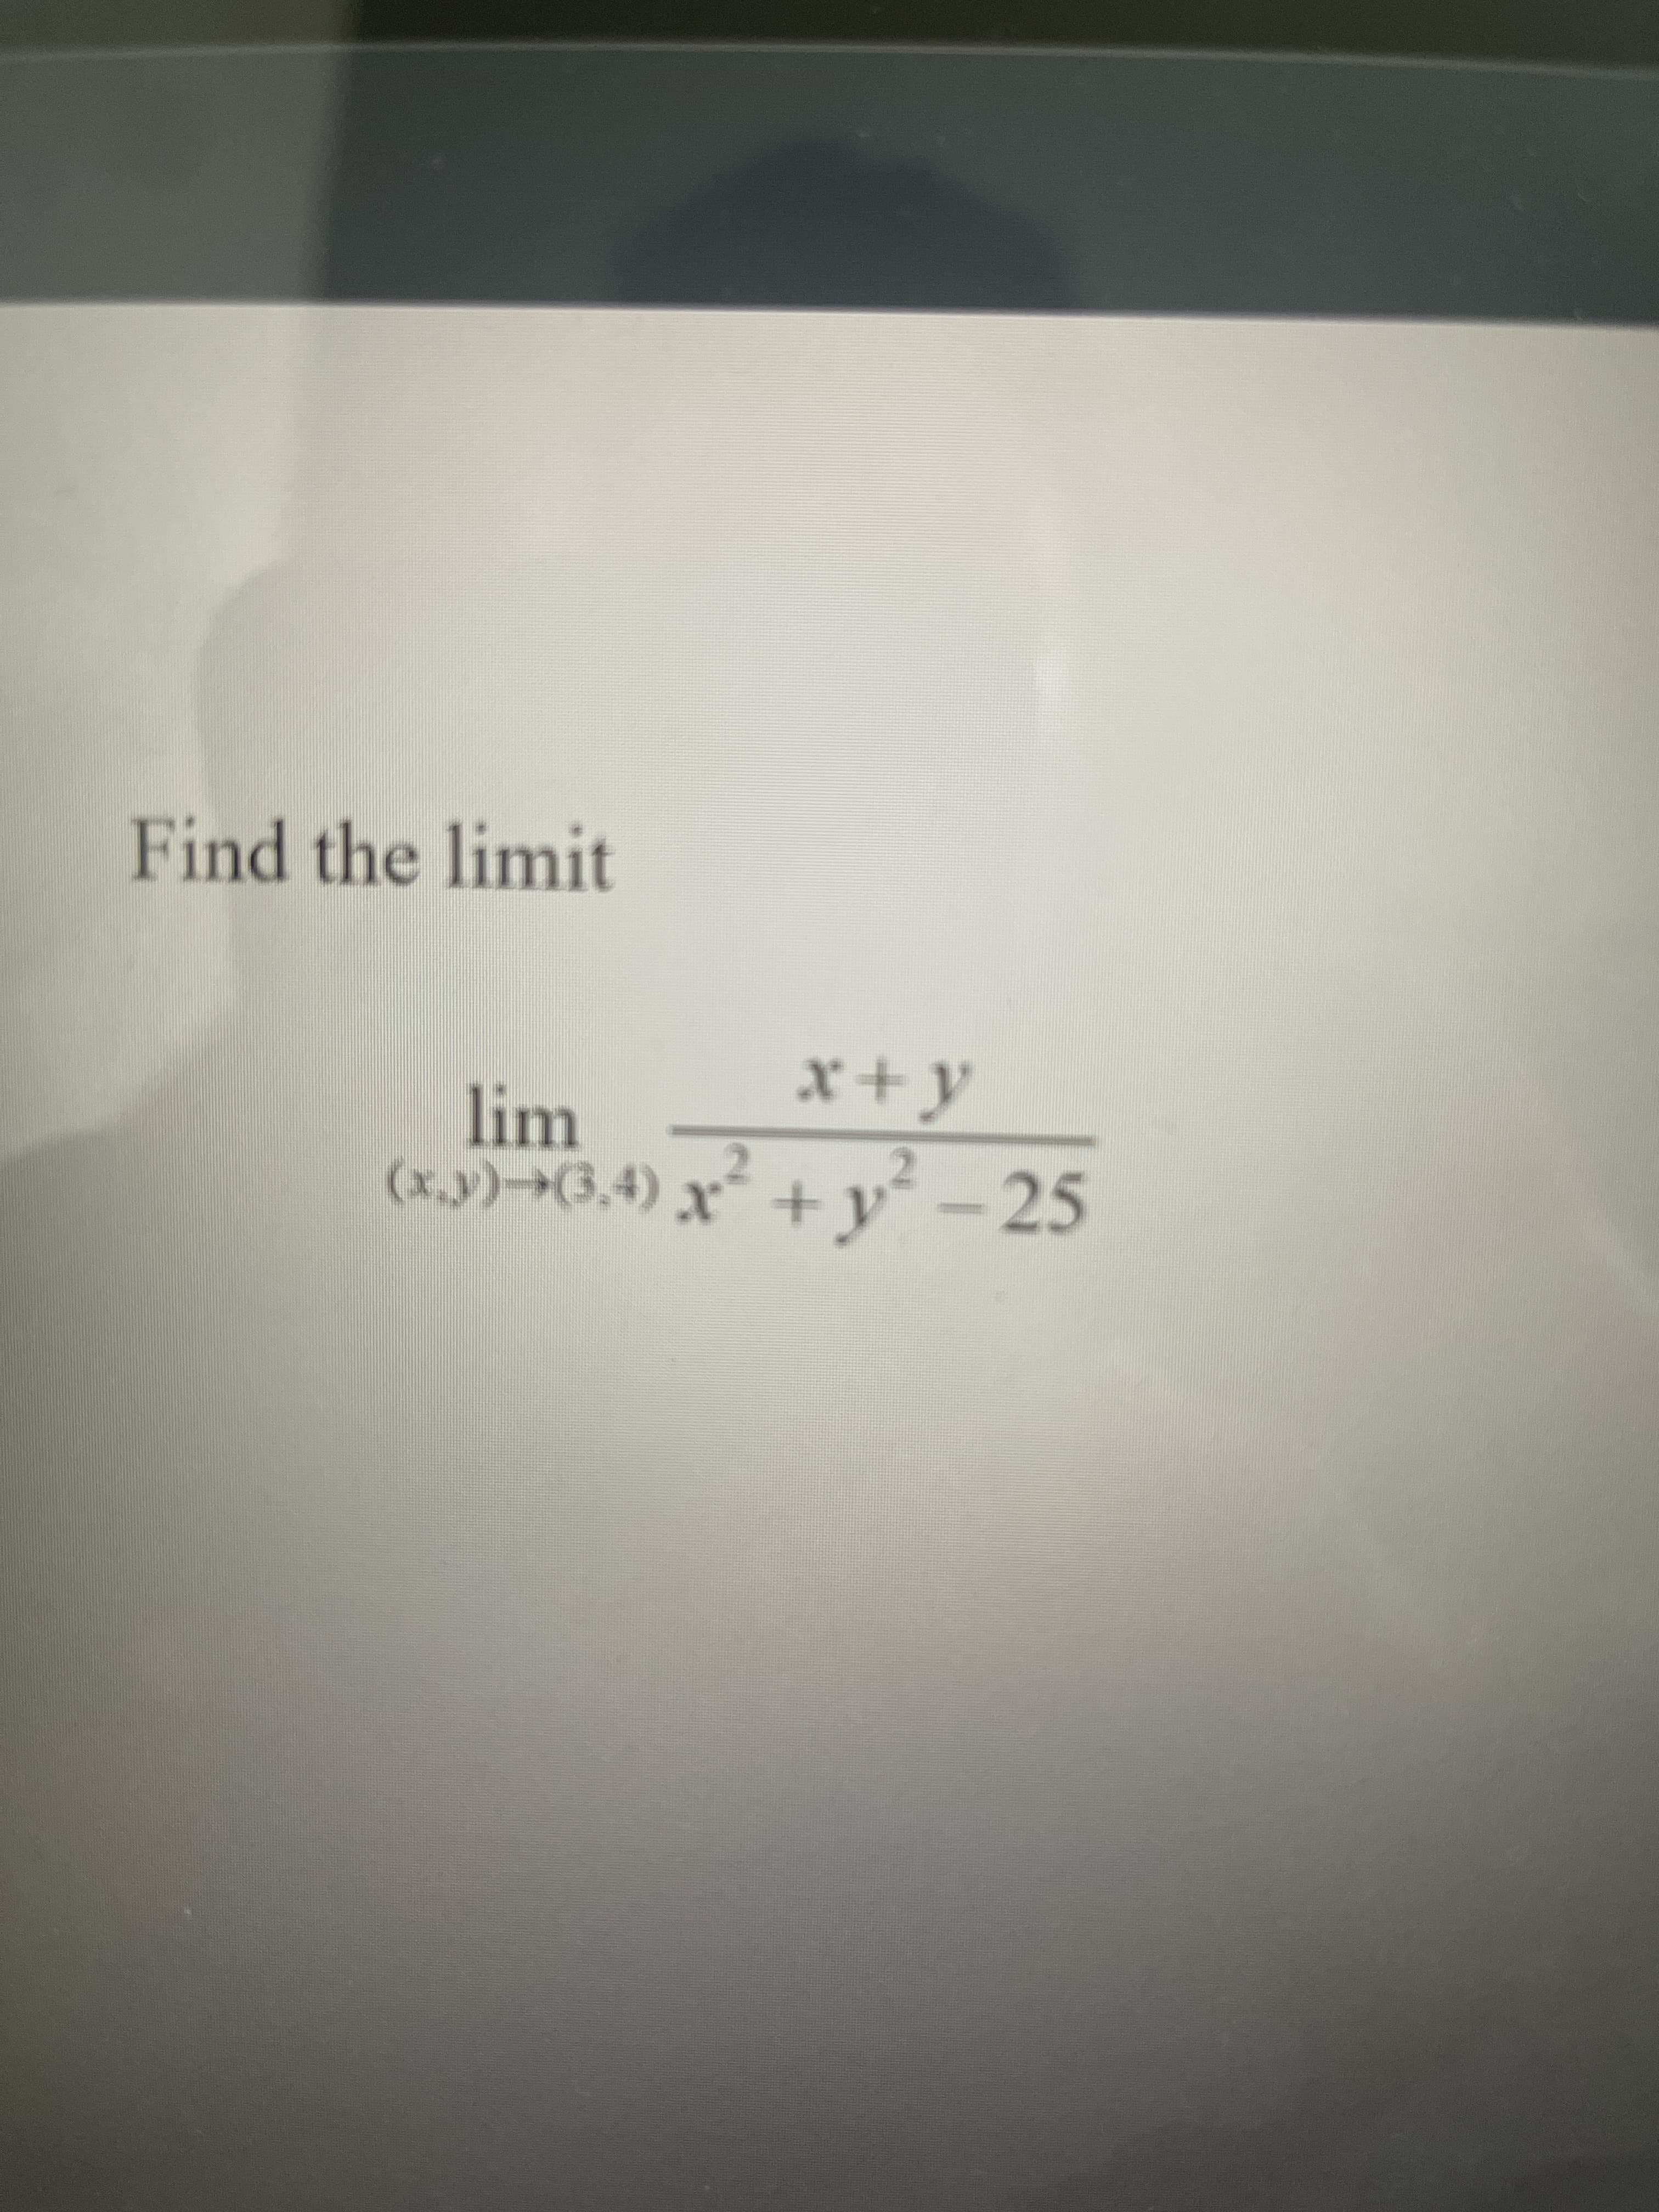 Find the limit
x+y
lim
(x.y)→(3,4) x
* + y² – 25
